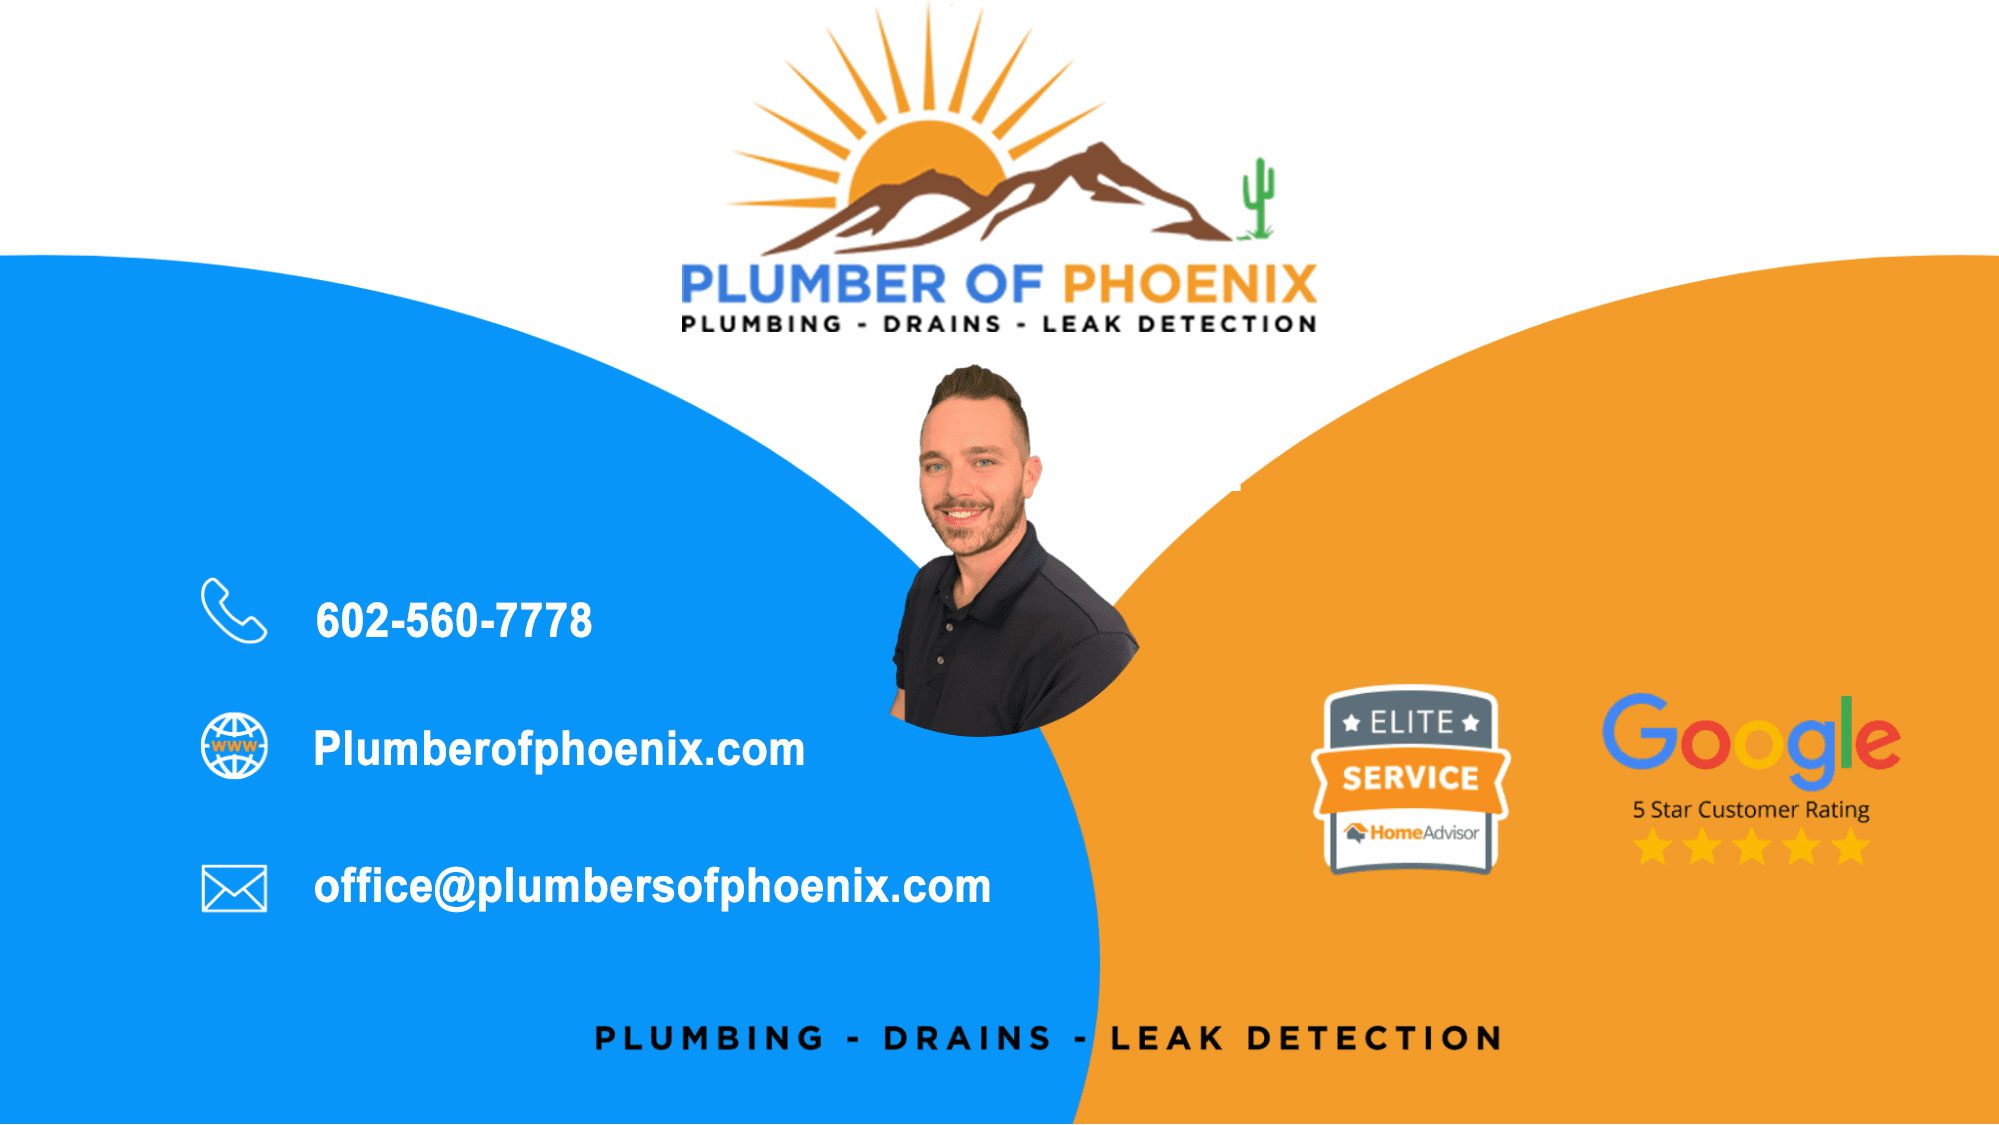 plumber of phoenix contact details